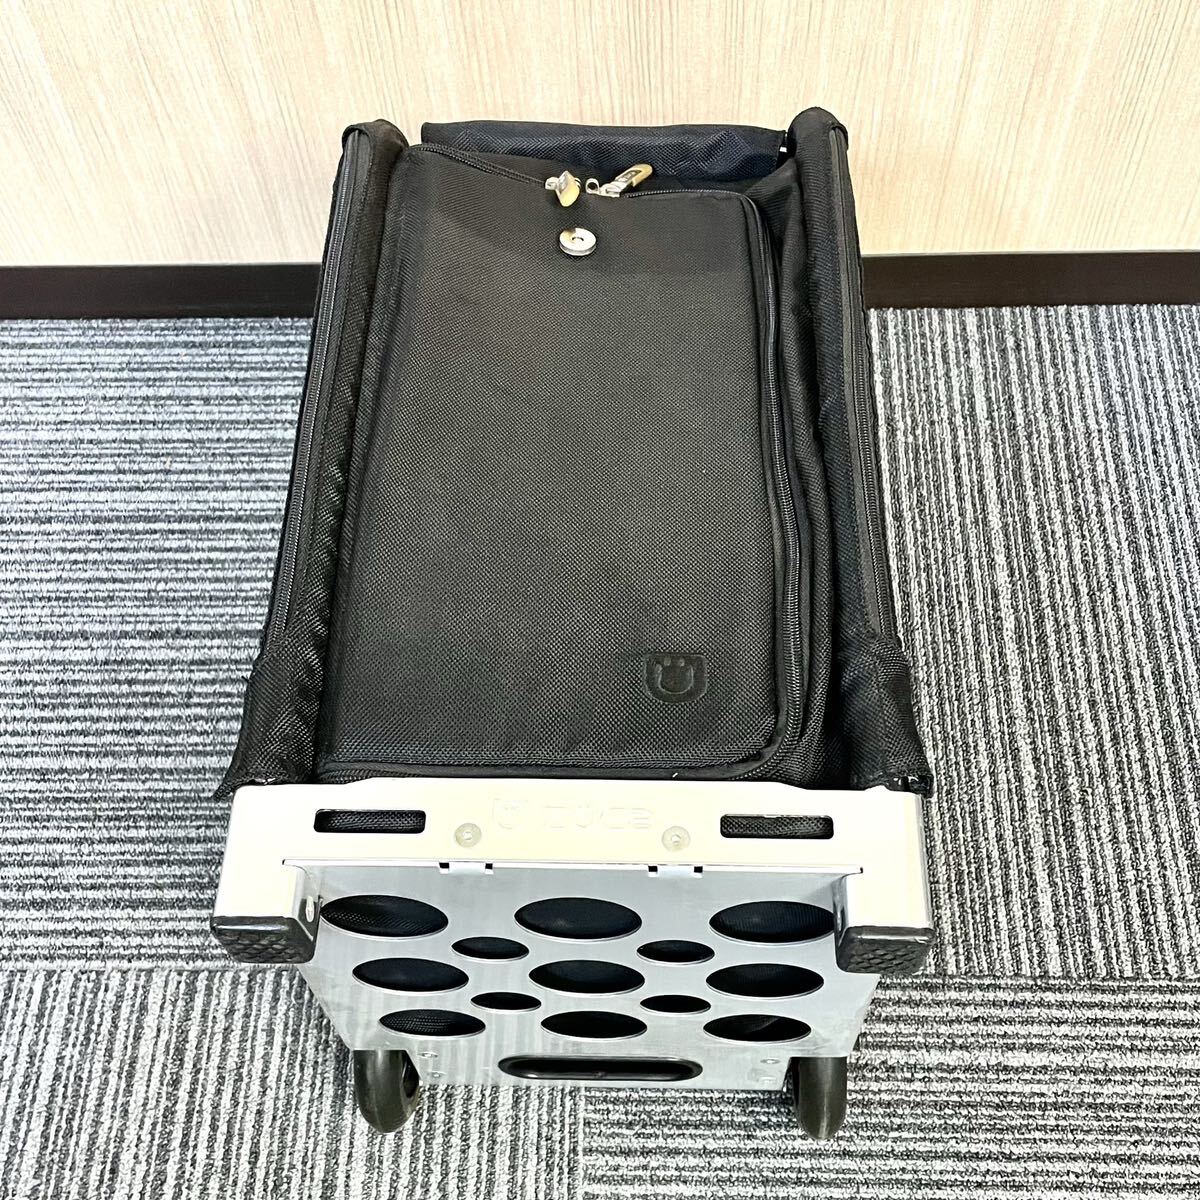 [ сиденье .. чемодан ]ZUCA ( Zoo ka) PRO Travel самолет машина внутри приносить соответствует размер Carry кейс дорожная сумка [ Novelty имеется ]